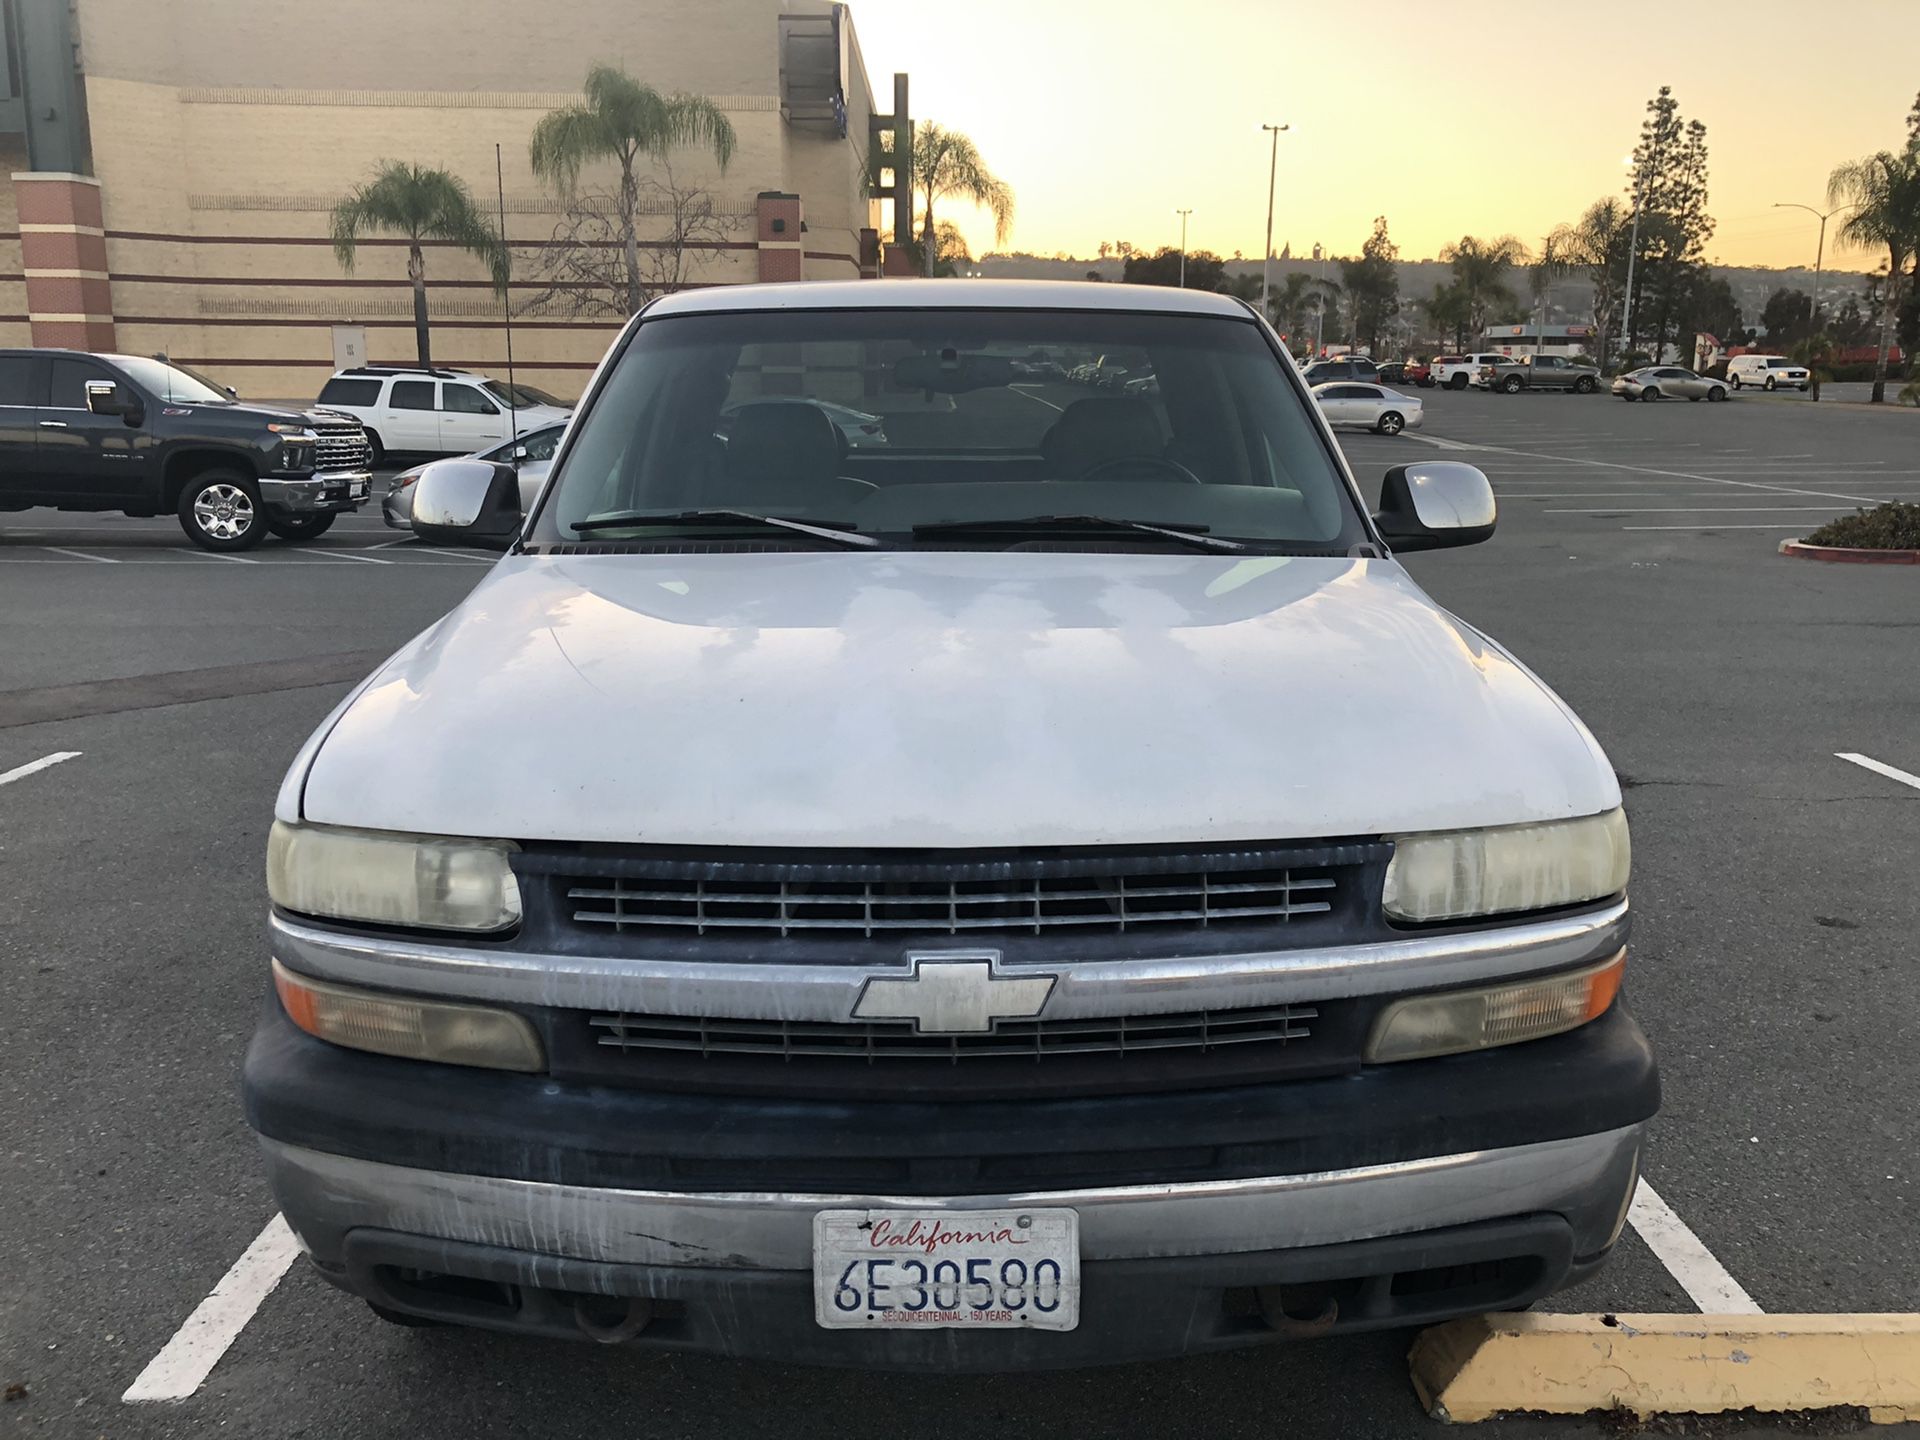 2000 Chevrolet Silverado 1500